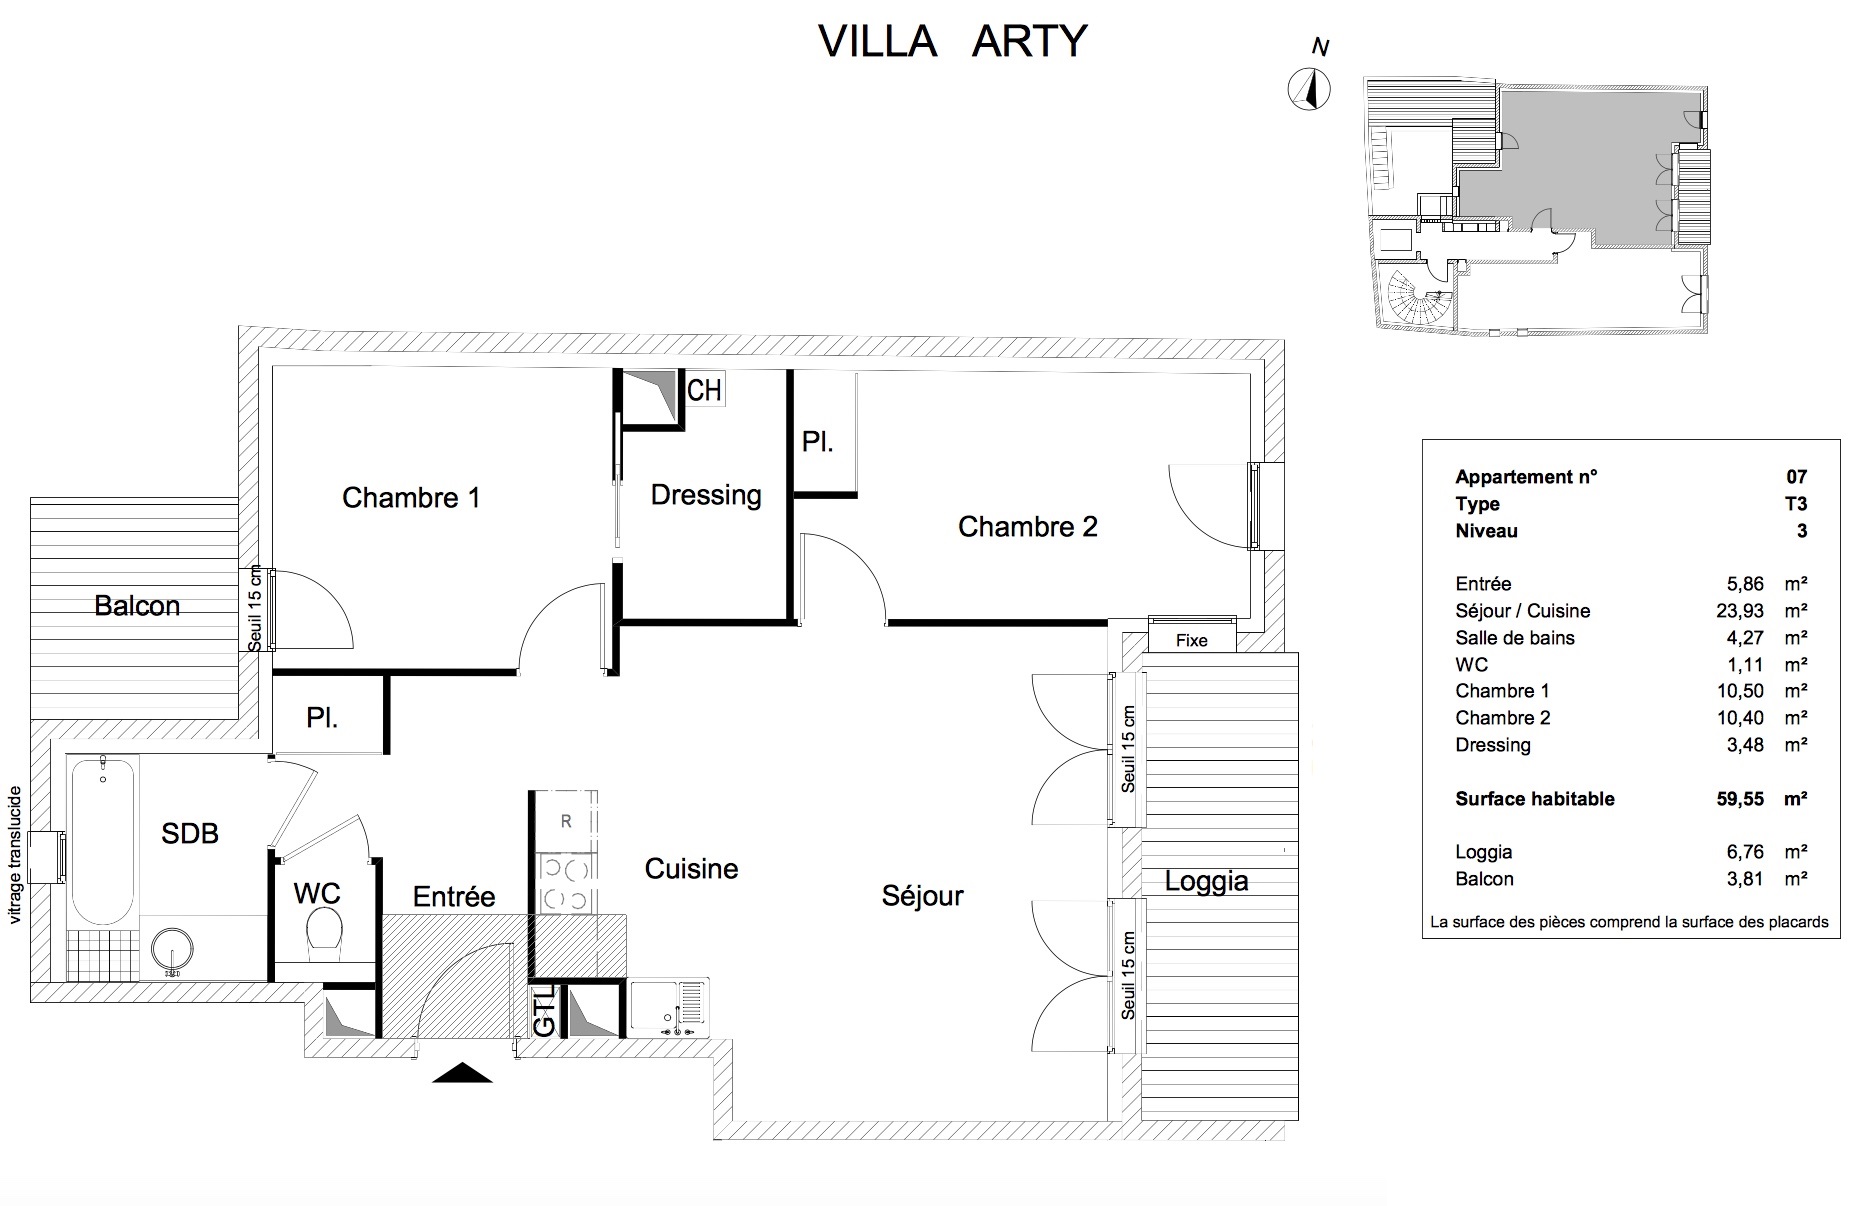 T3 - 59,55 m² - 3ème étage - Loggia 6,76 m² - Balcon 3,81 m² - Documentation - VENDU